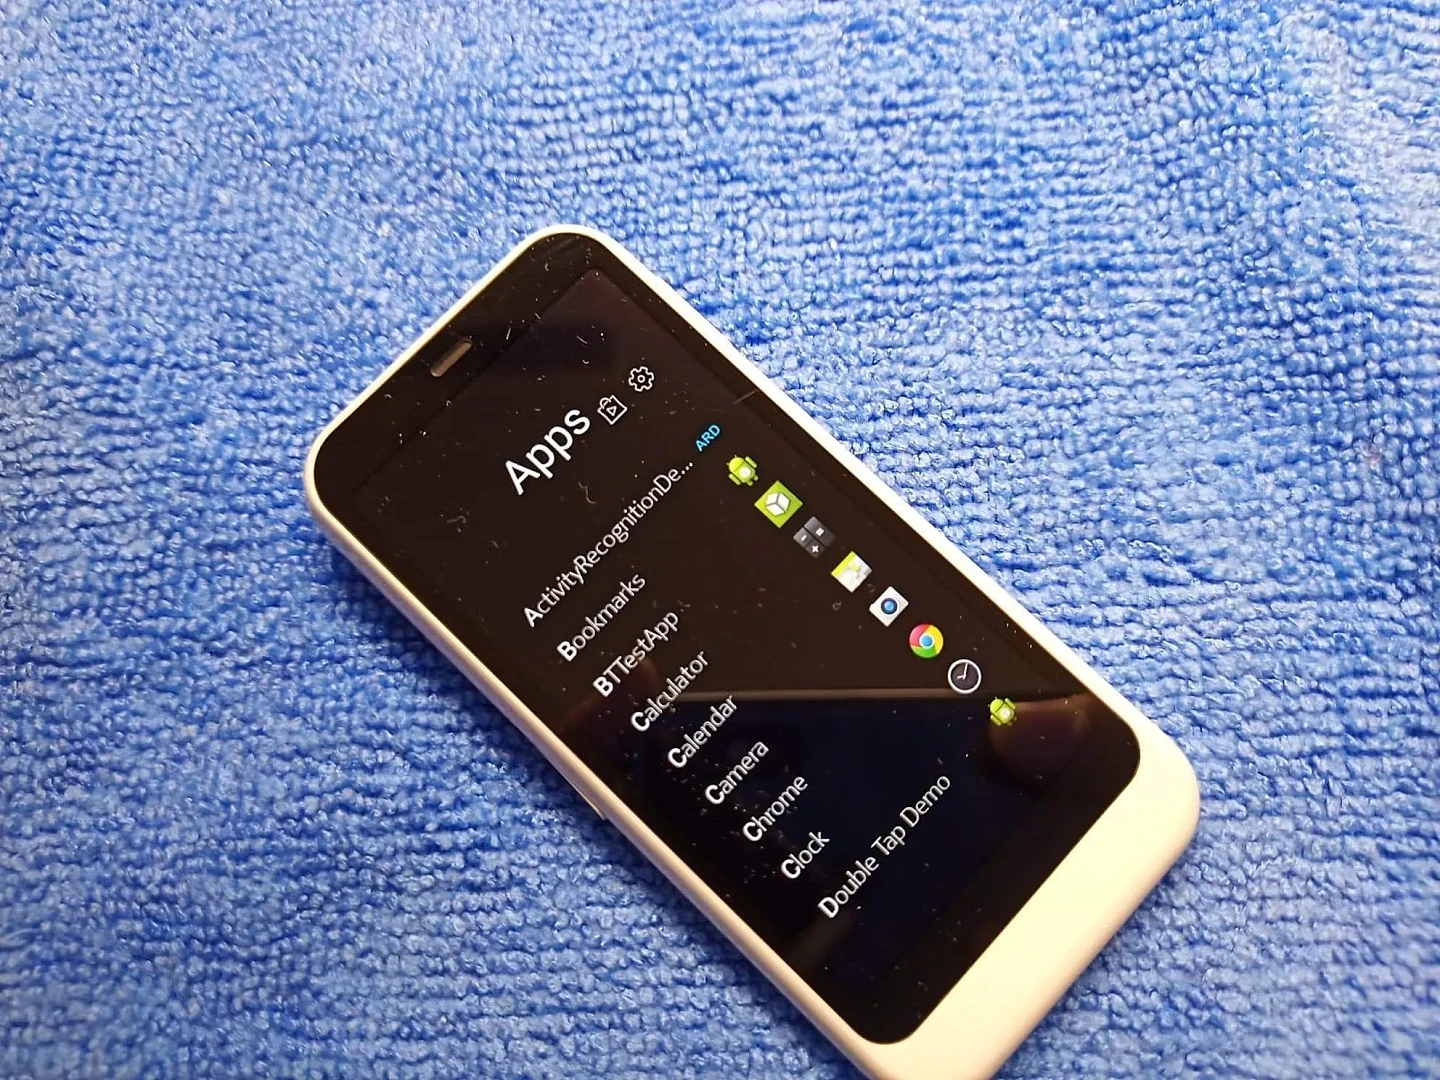 Nokia-RM-1028-UI-1.webp